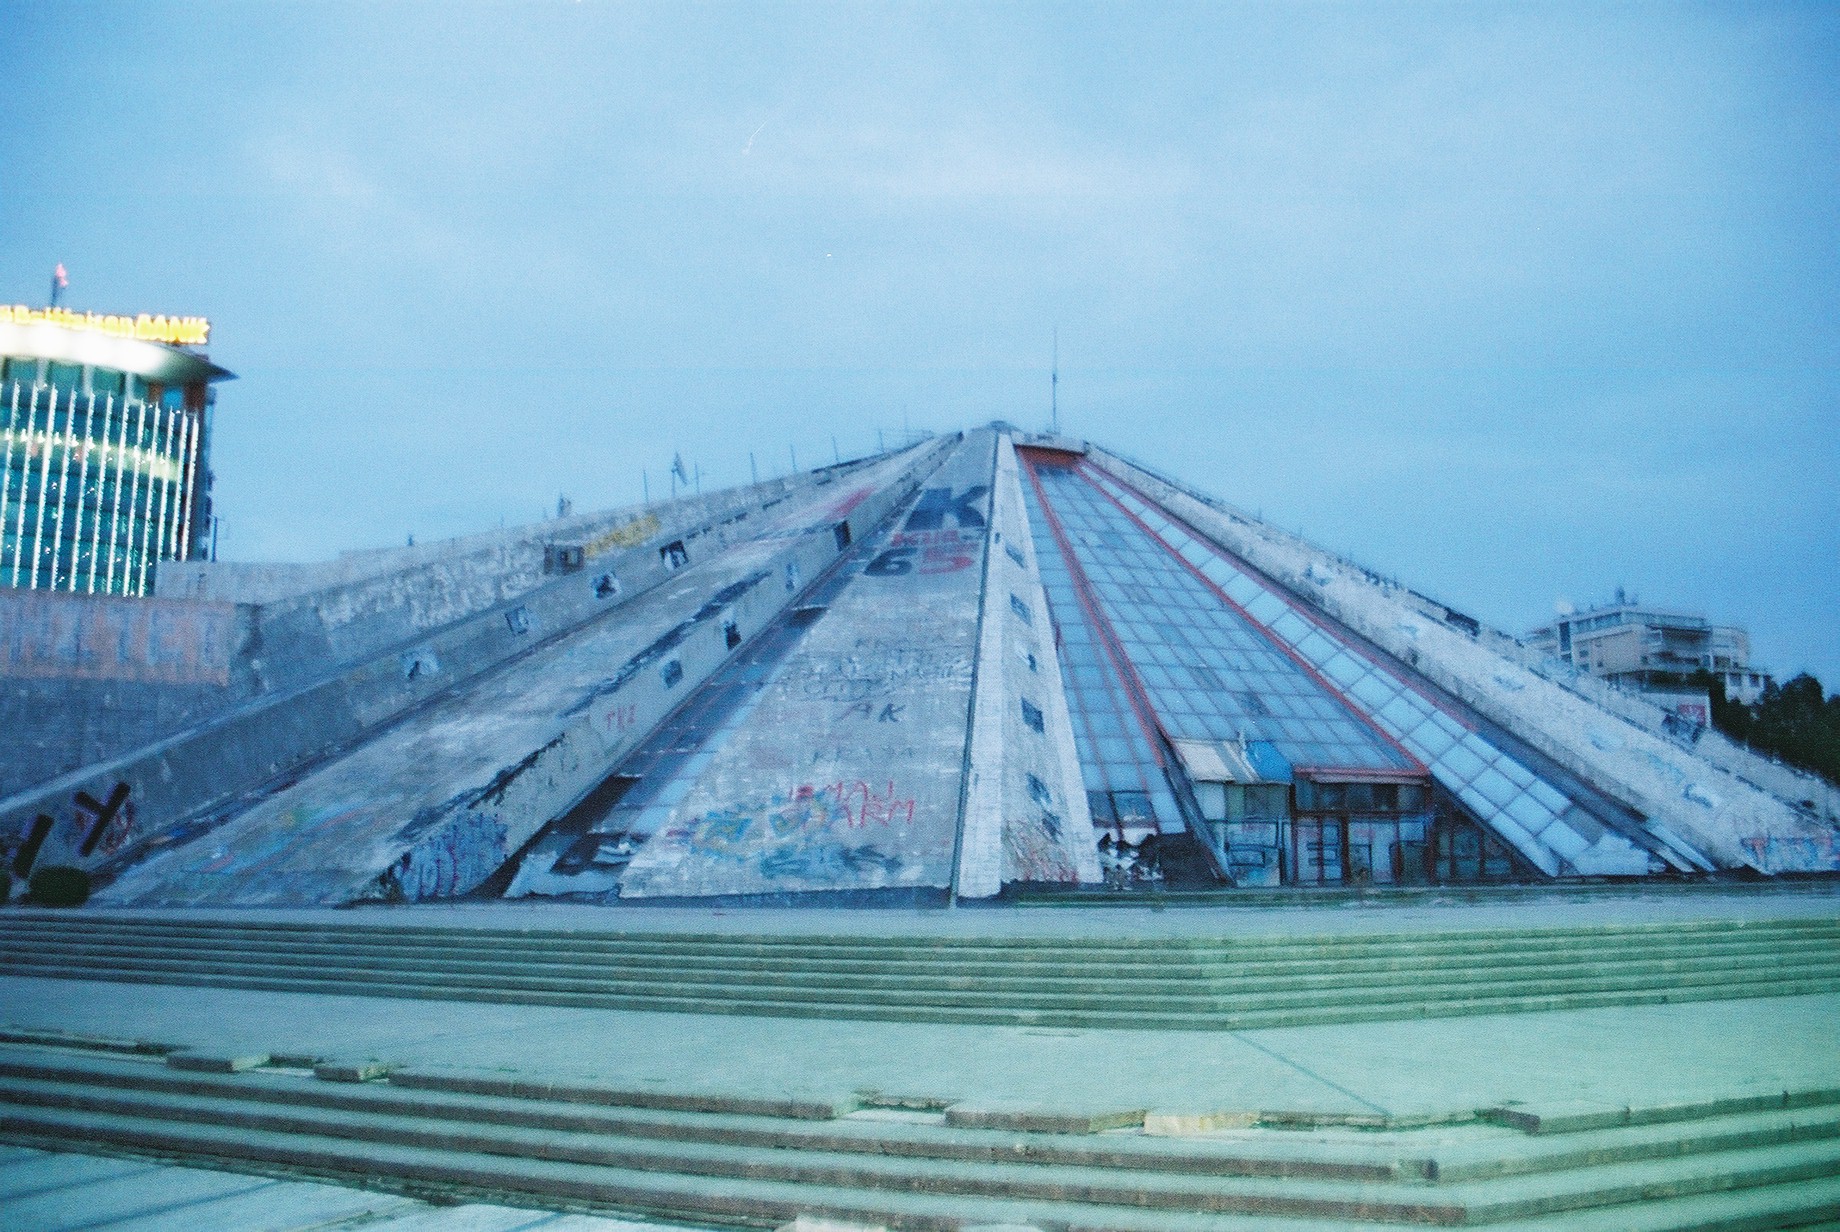 The Pyramid 2013